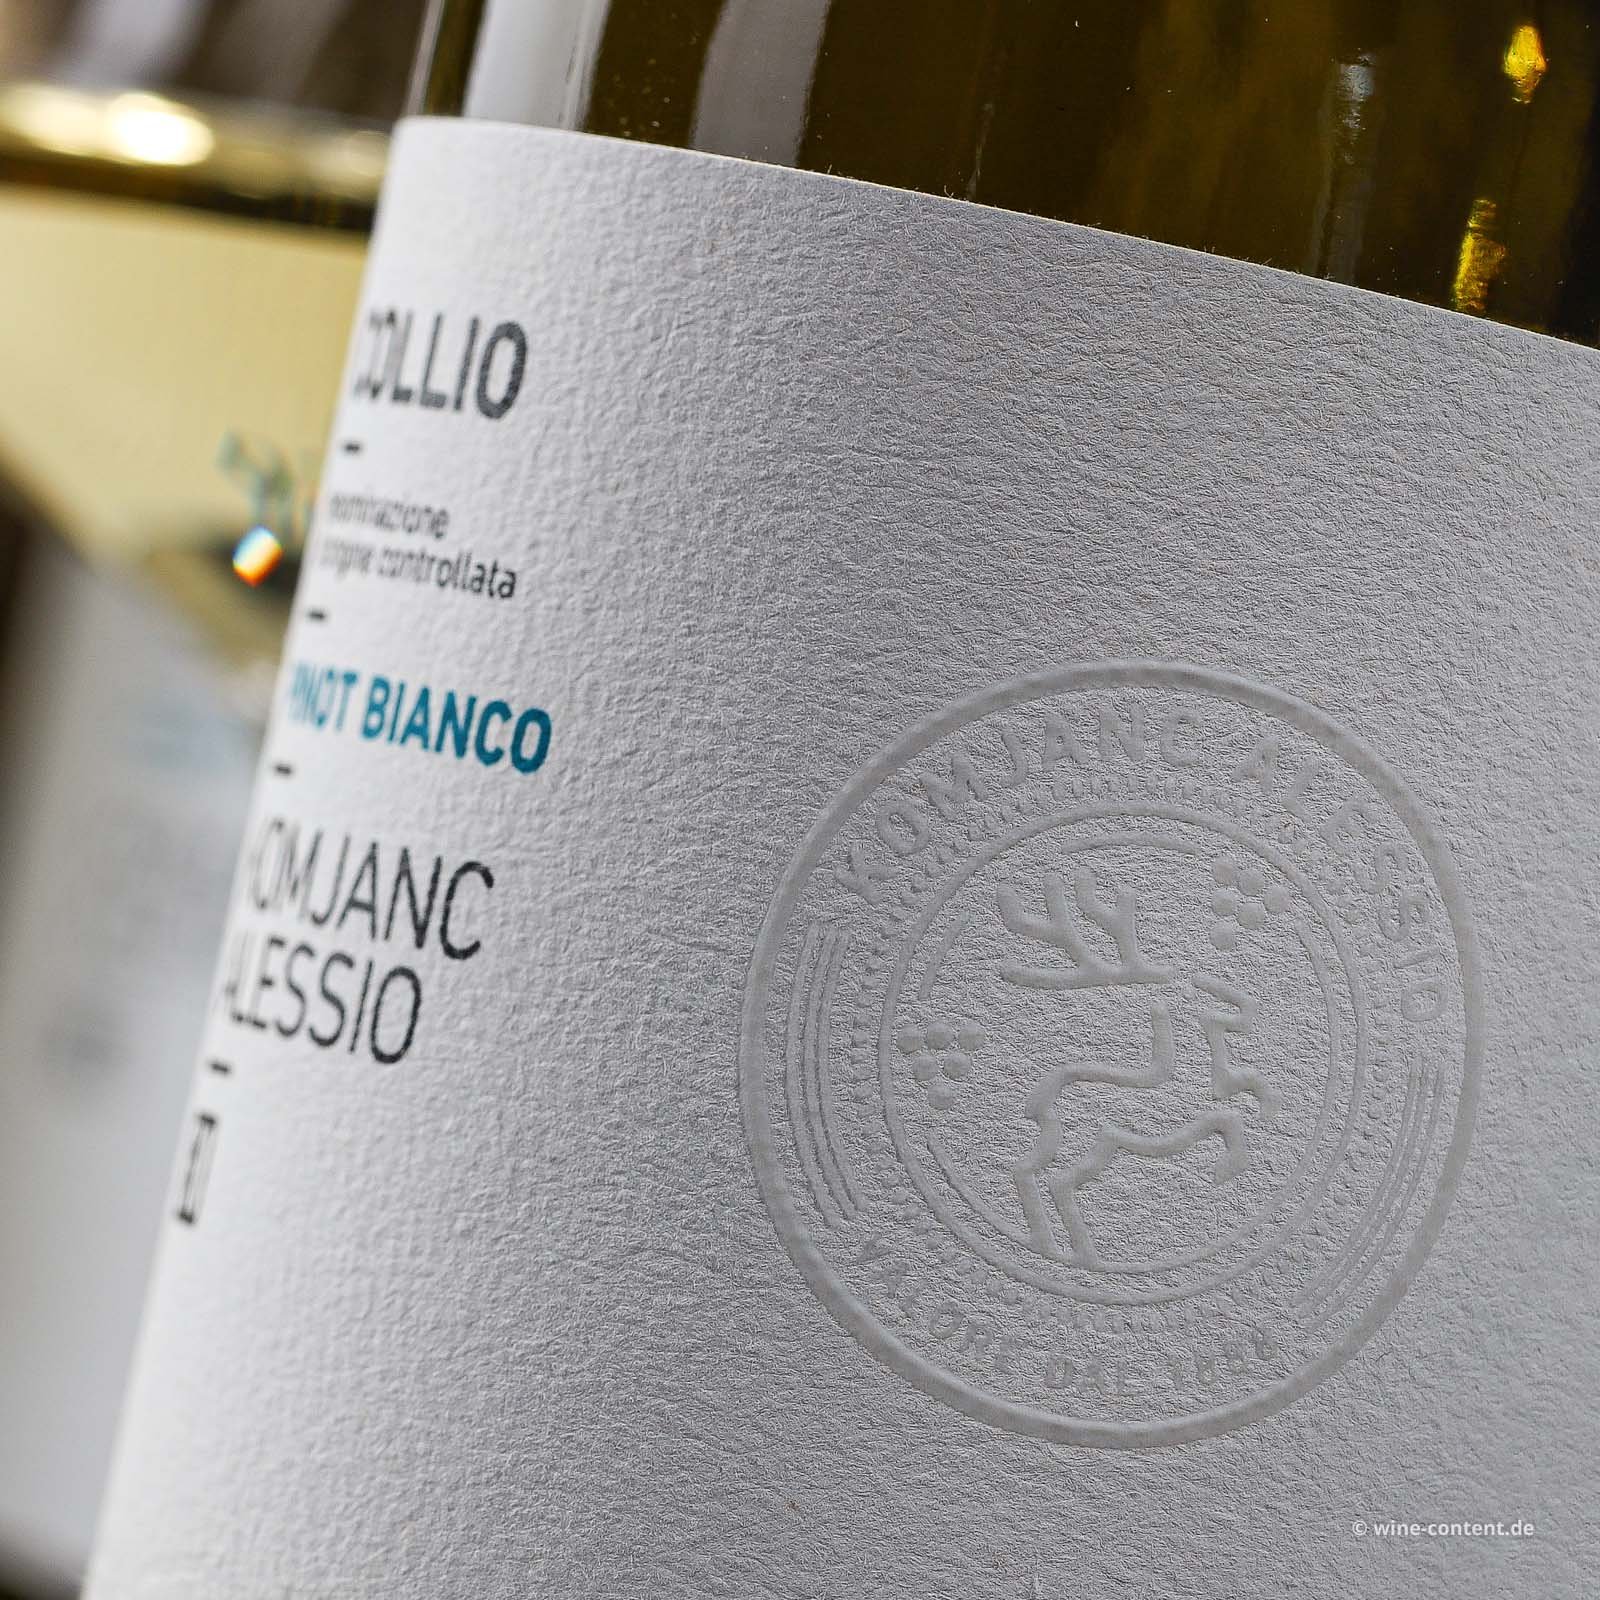 Pinot Bianco 2022 Collio